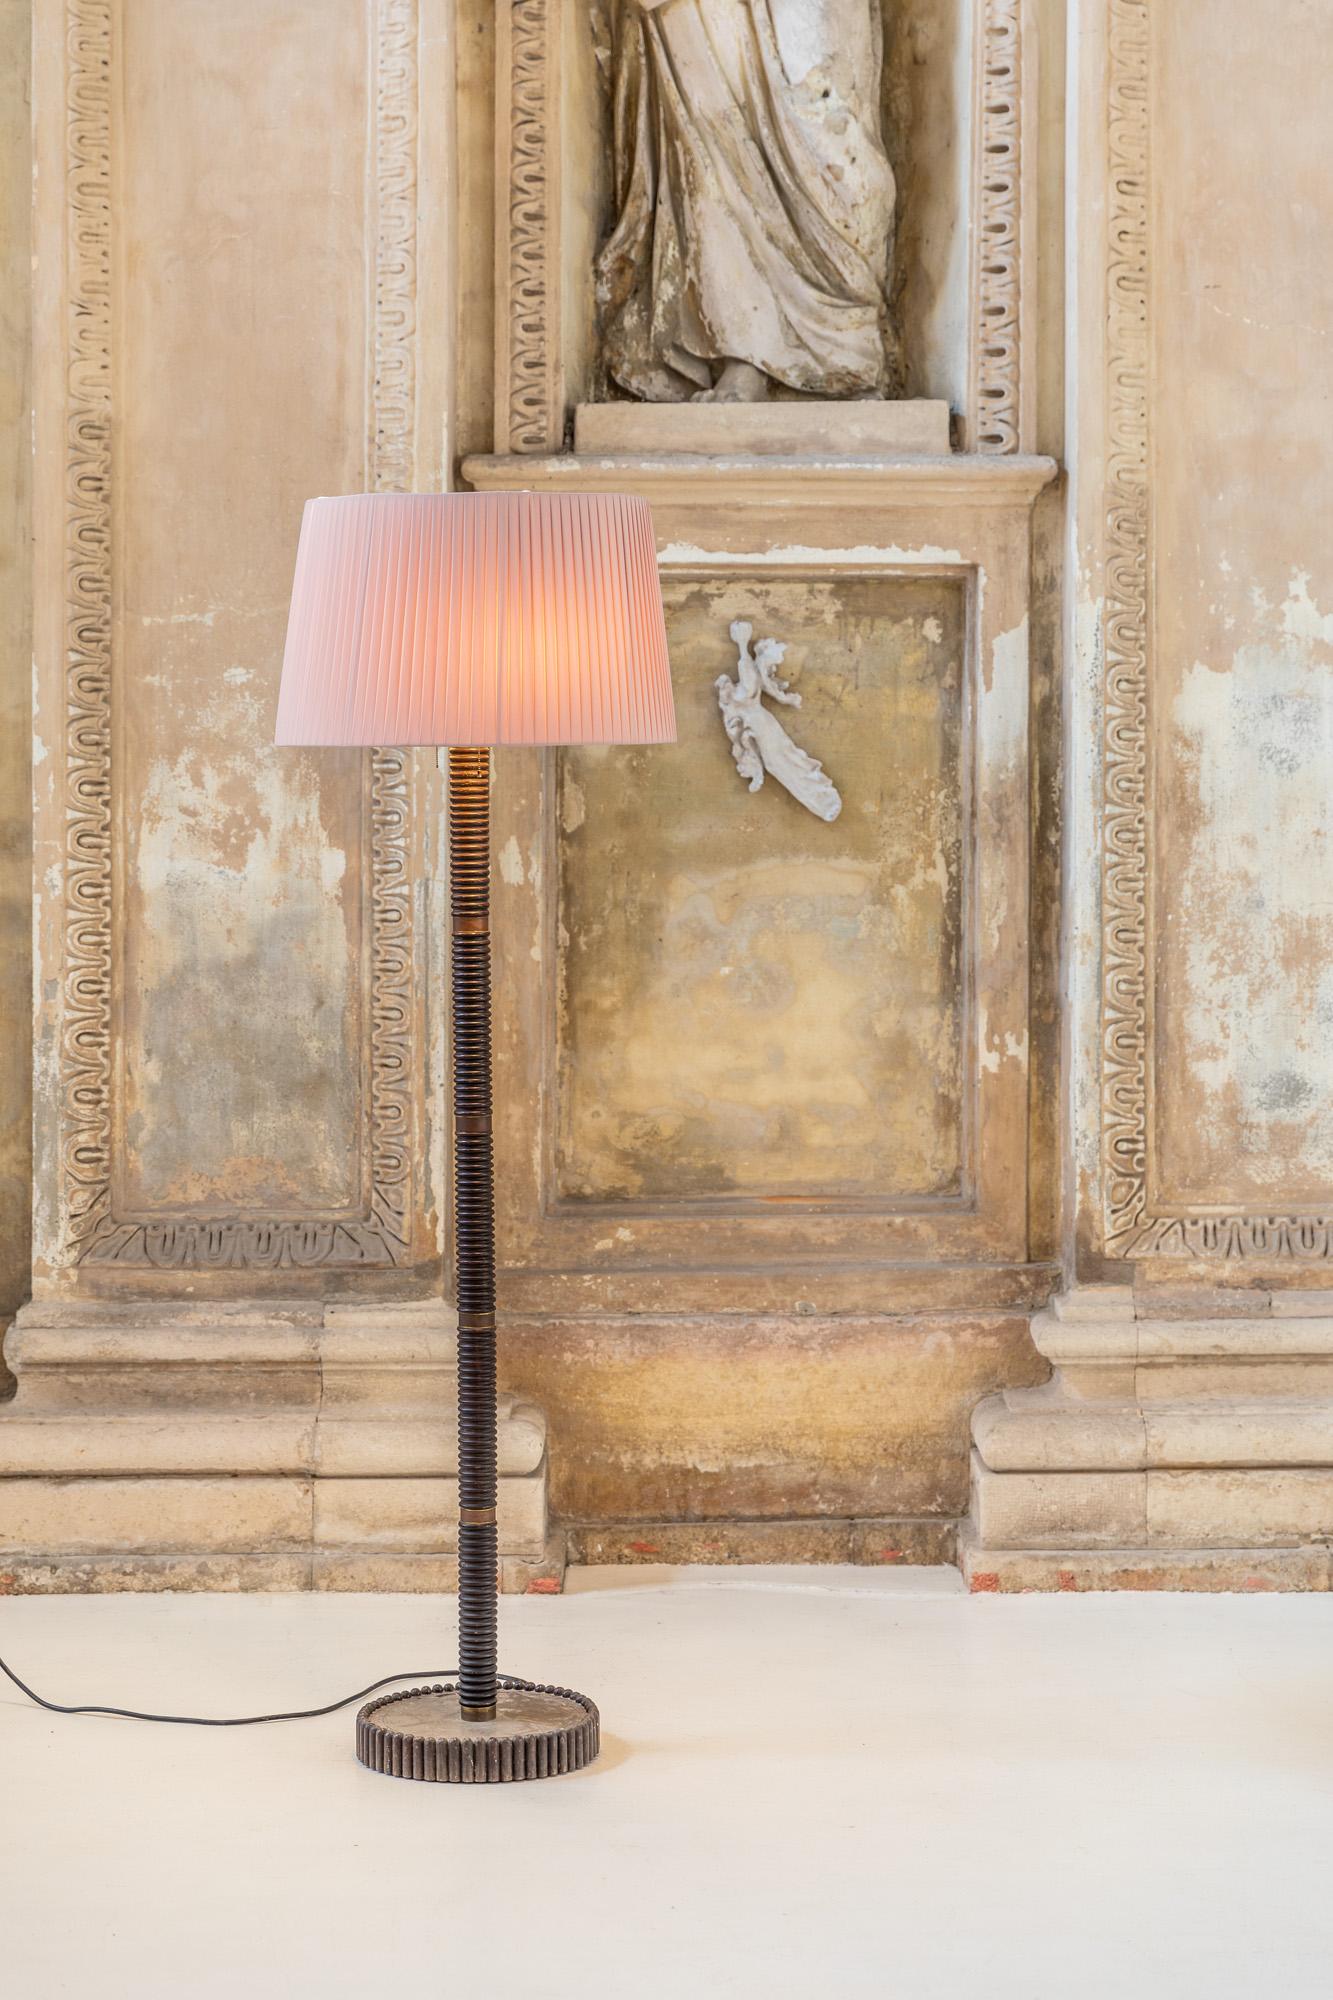 Elegant lampadaire avec structure en bois et laiton, fabriqué en Italie dans les années 40.
Cache-lampes à deux ampoules avec un abat-jour en tissu plissé rose monté sur un pied de lampe et une tige finement décorés.